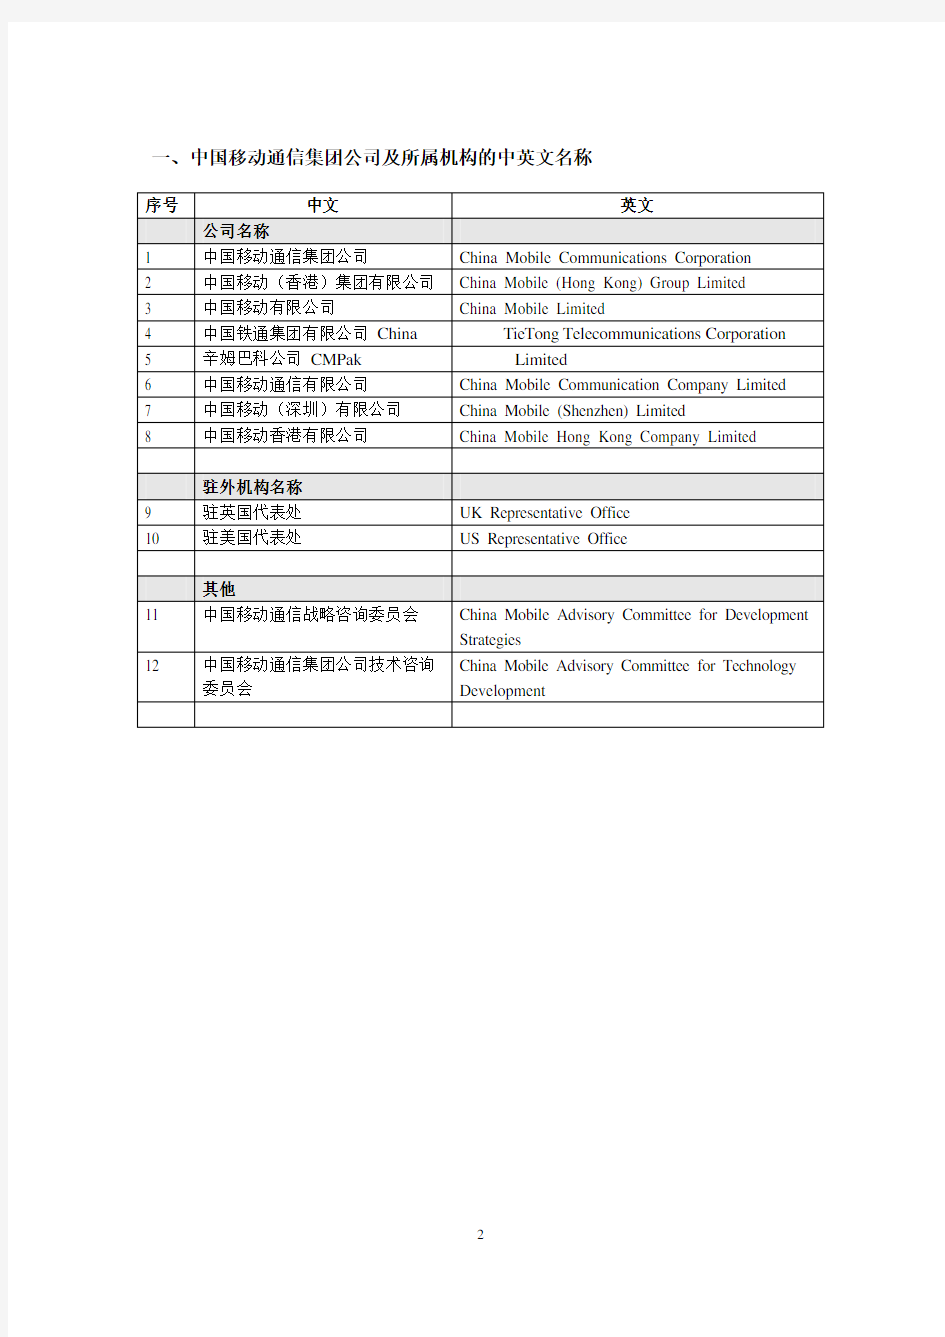 中国移动通信集新团公司中、英文名称对照表(第三版)